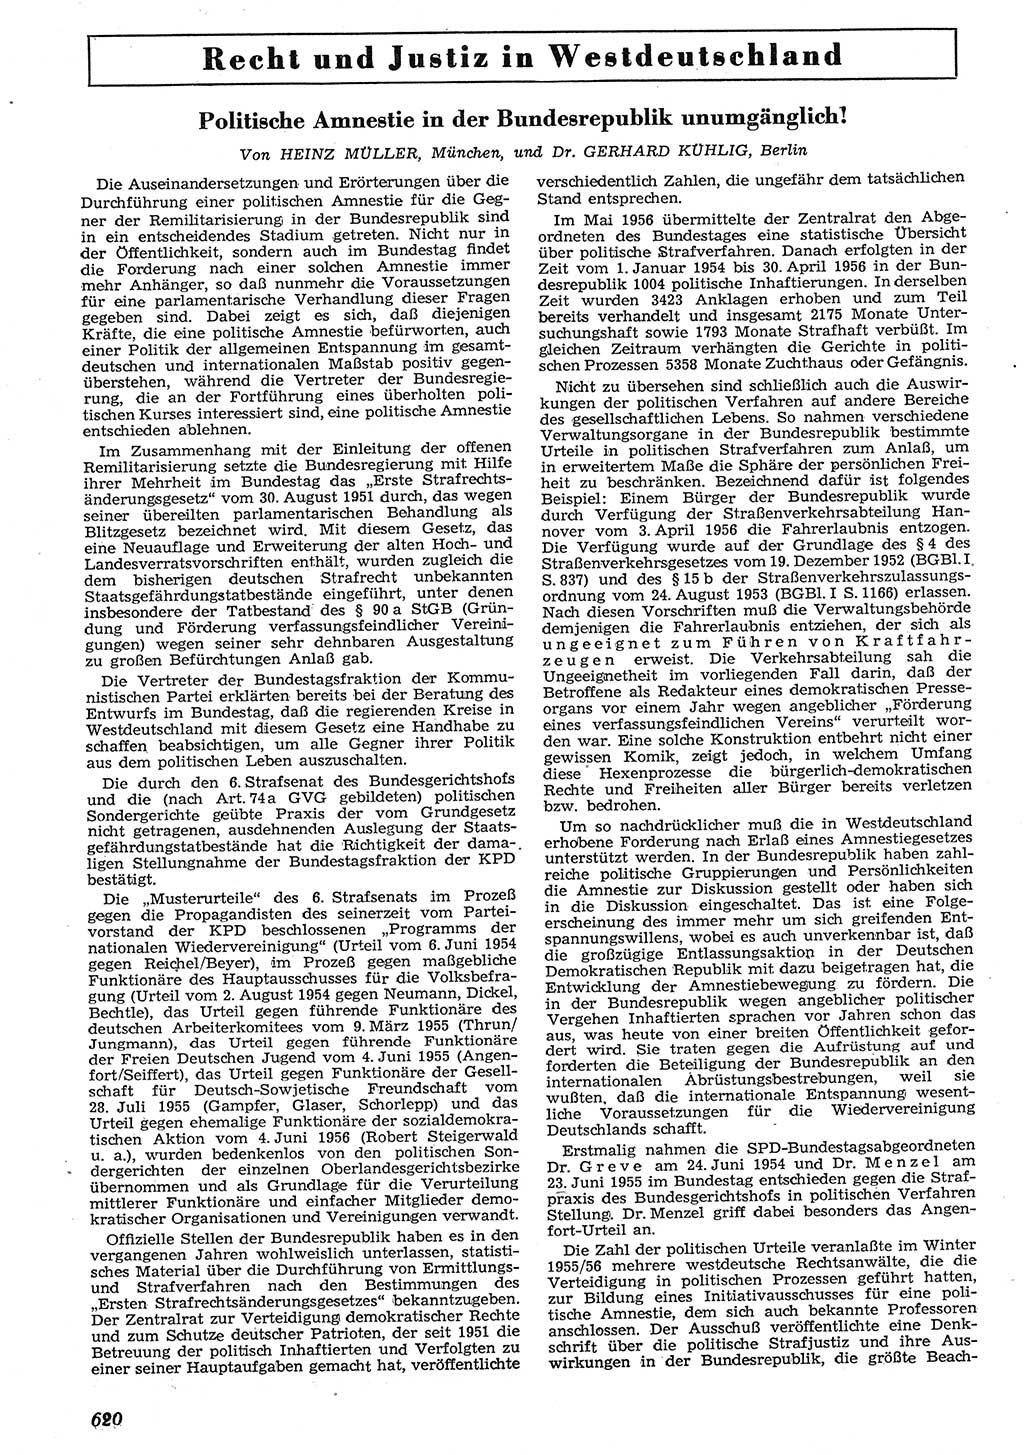 Neue Justiz (NJ), Zeitschrift für Recht und Rechtswissenschaft [Deutsche Demokratische Republik (DDR)], 10. Jahrgang 1956, Seite 620 (NJ DDR 1956, S. 620)